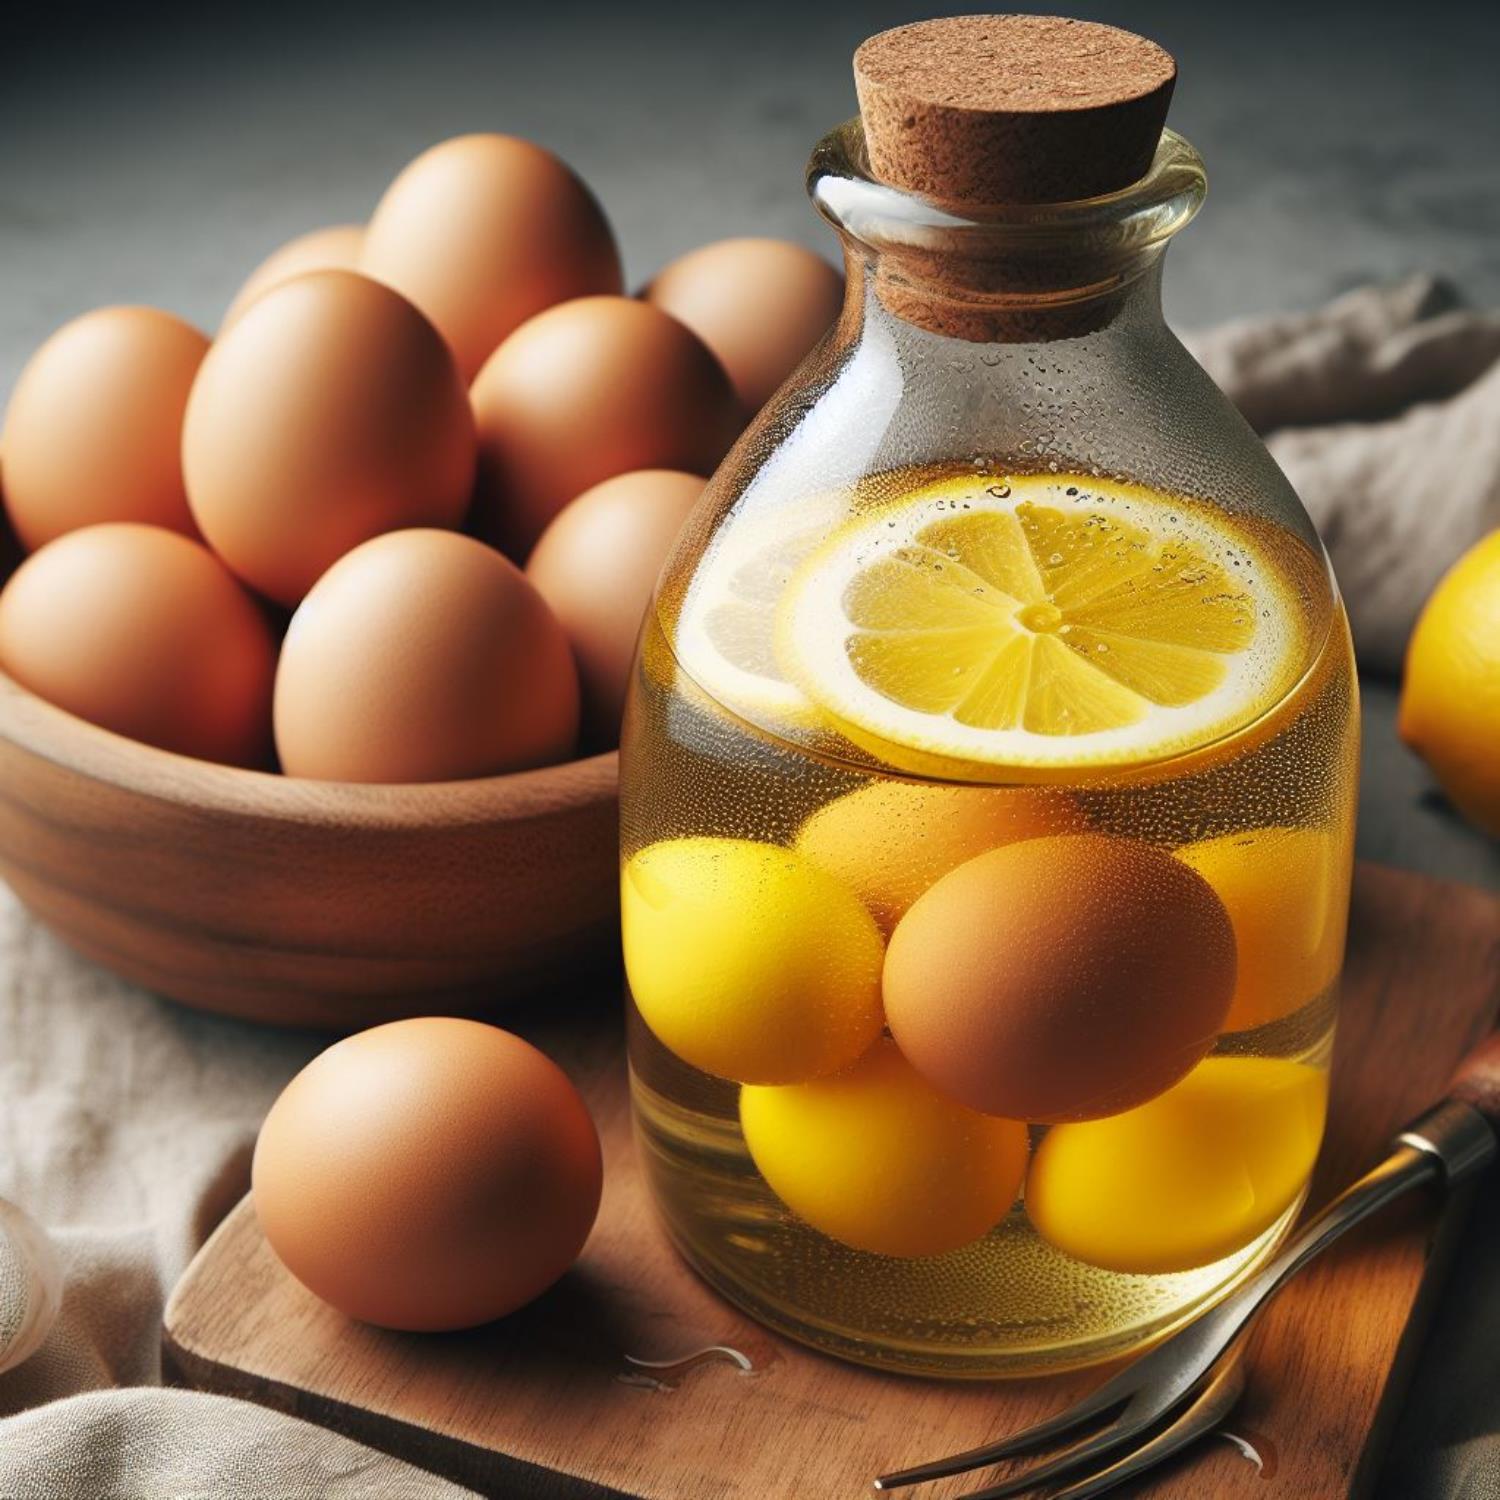 醋蛋做法,醋蛋功效及副作用,醋蛋功效,醋蛋